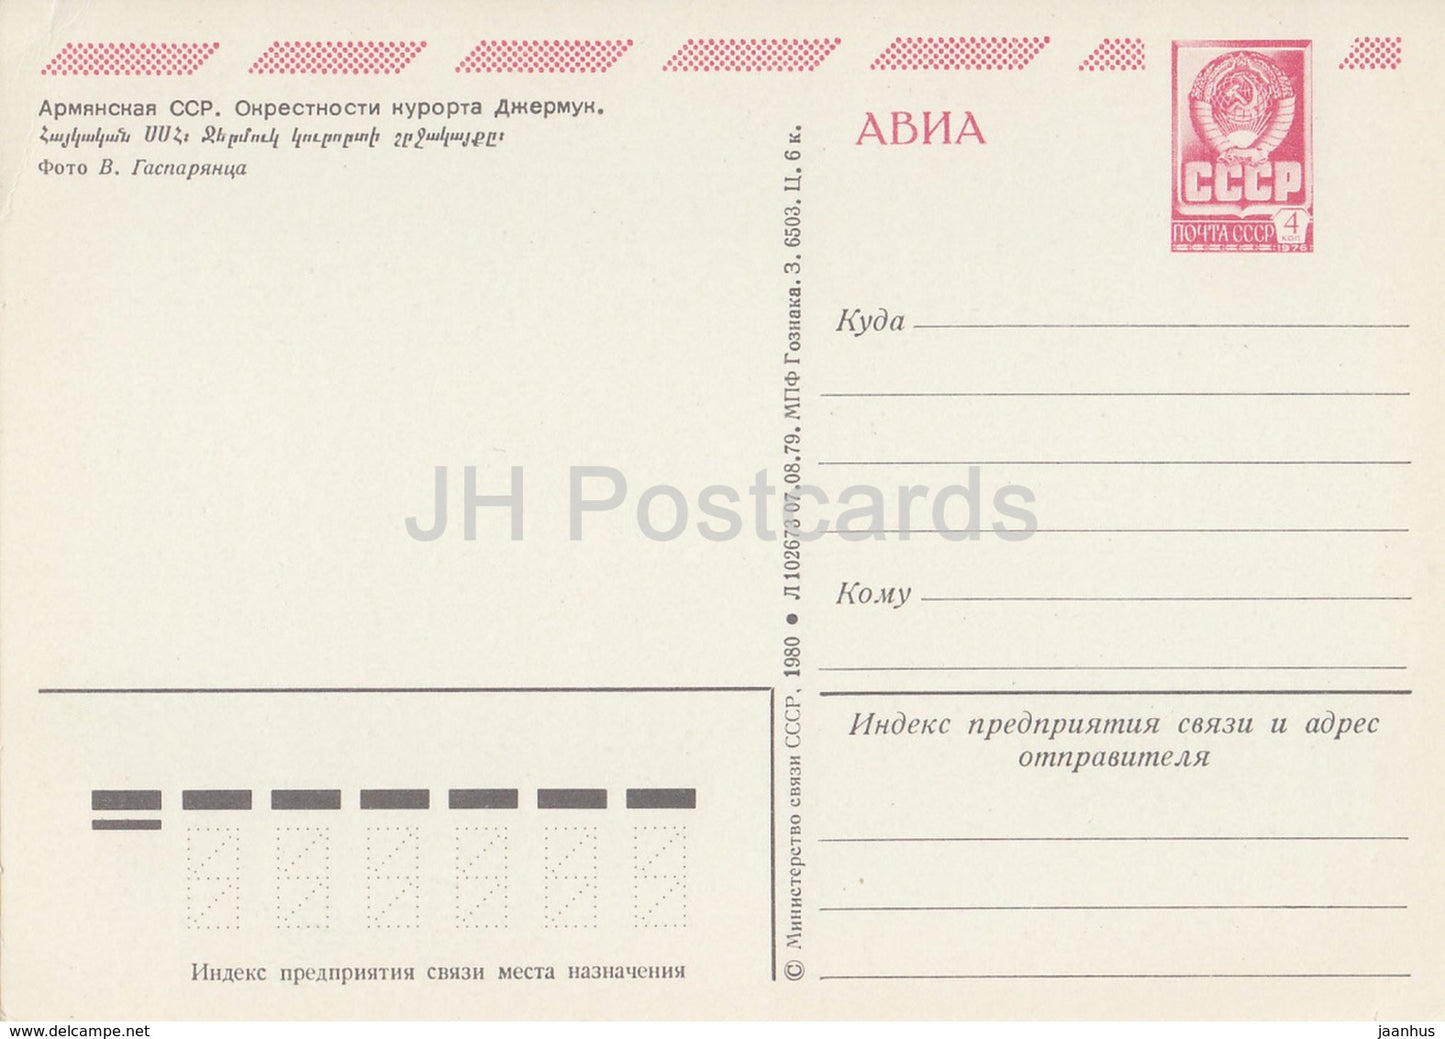 Jermuk region - AVIA - postal stationery - 1980 - Armenia USSR -  unused